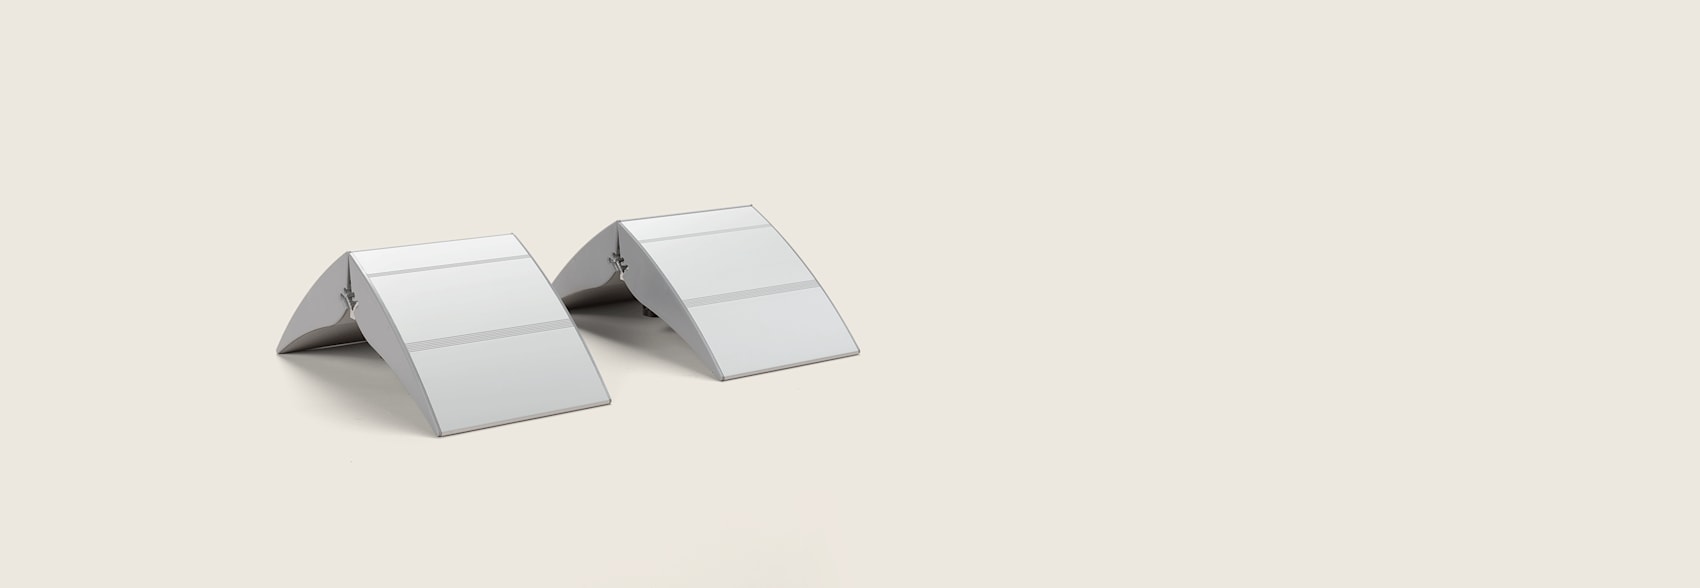 base in metallo pesante quadrata Argento supporto per cartello con piedistallo regolabile in altezza Haitian A3 girevole formato A4/A3 per poster che mostra sia orizzontale che verticale 